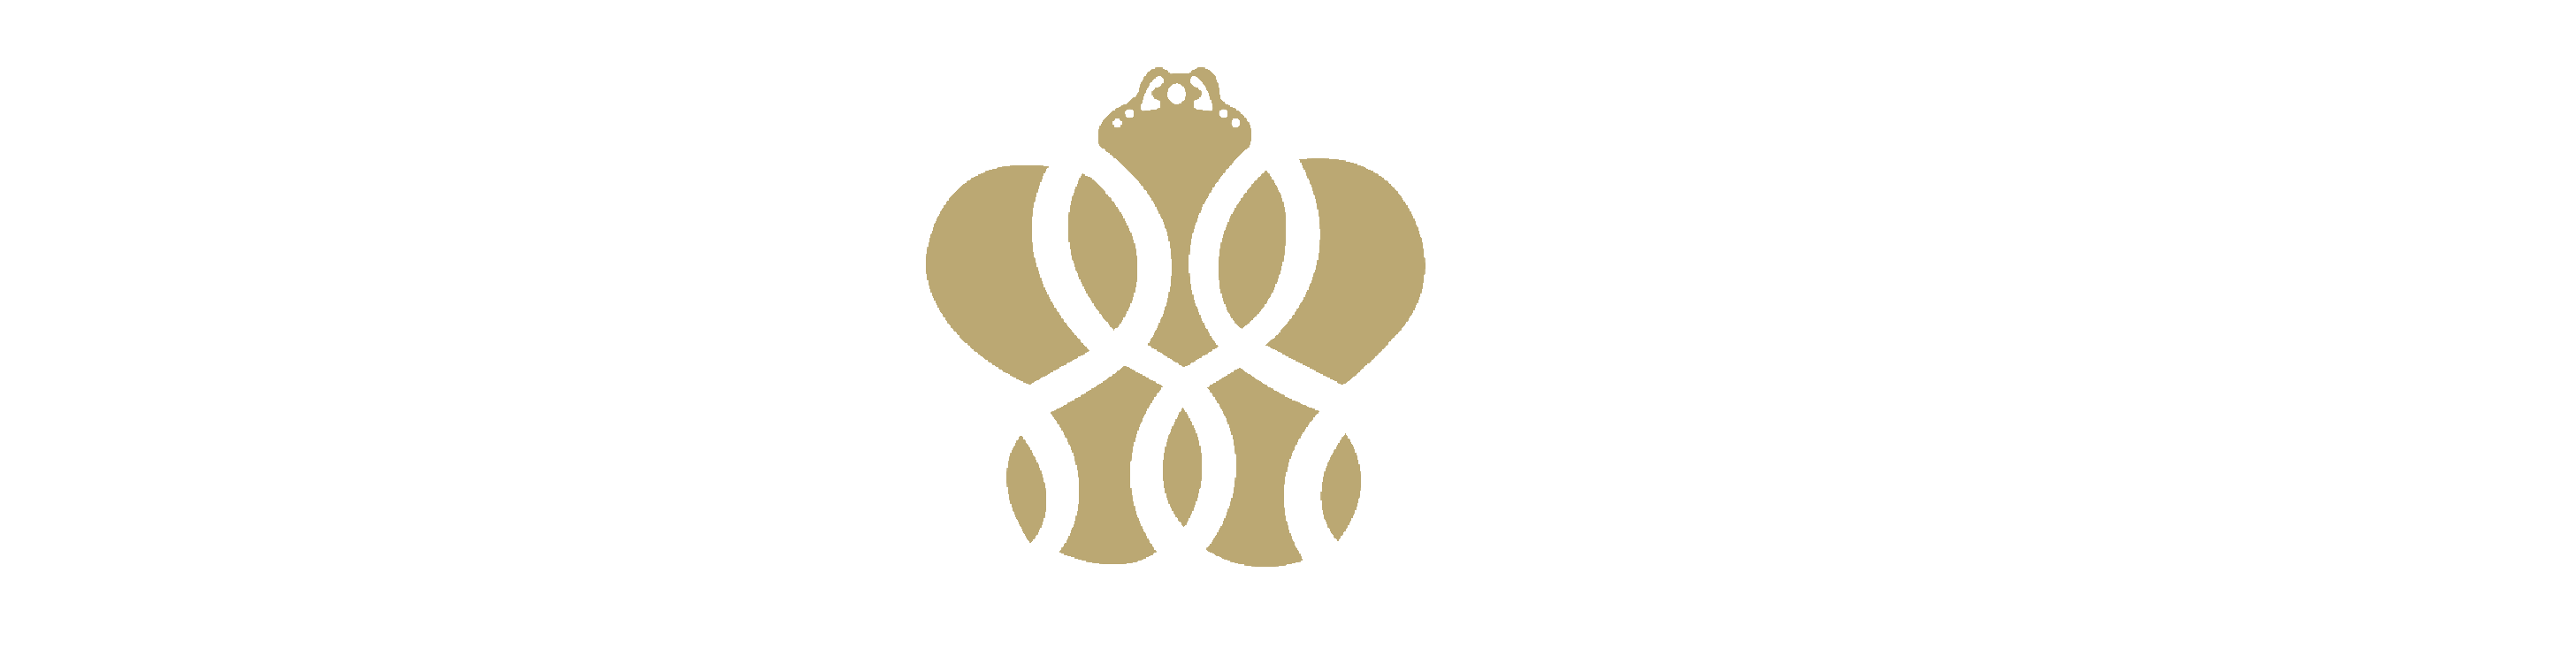 Kapico Travels & Tours |   Destinations